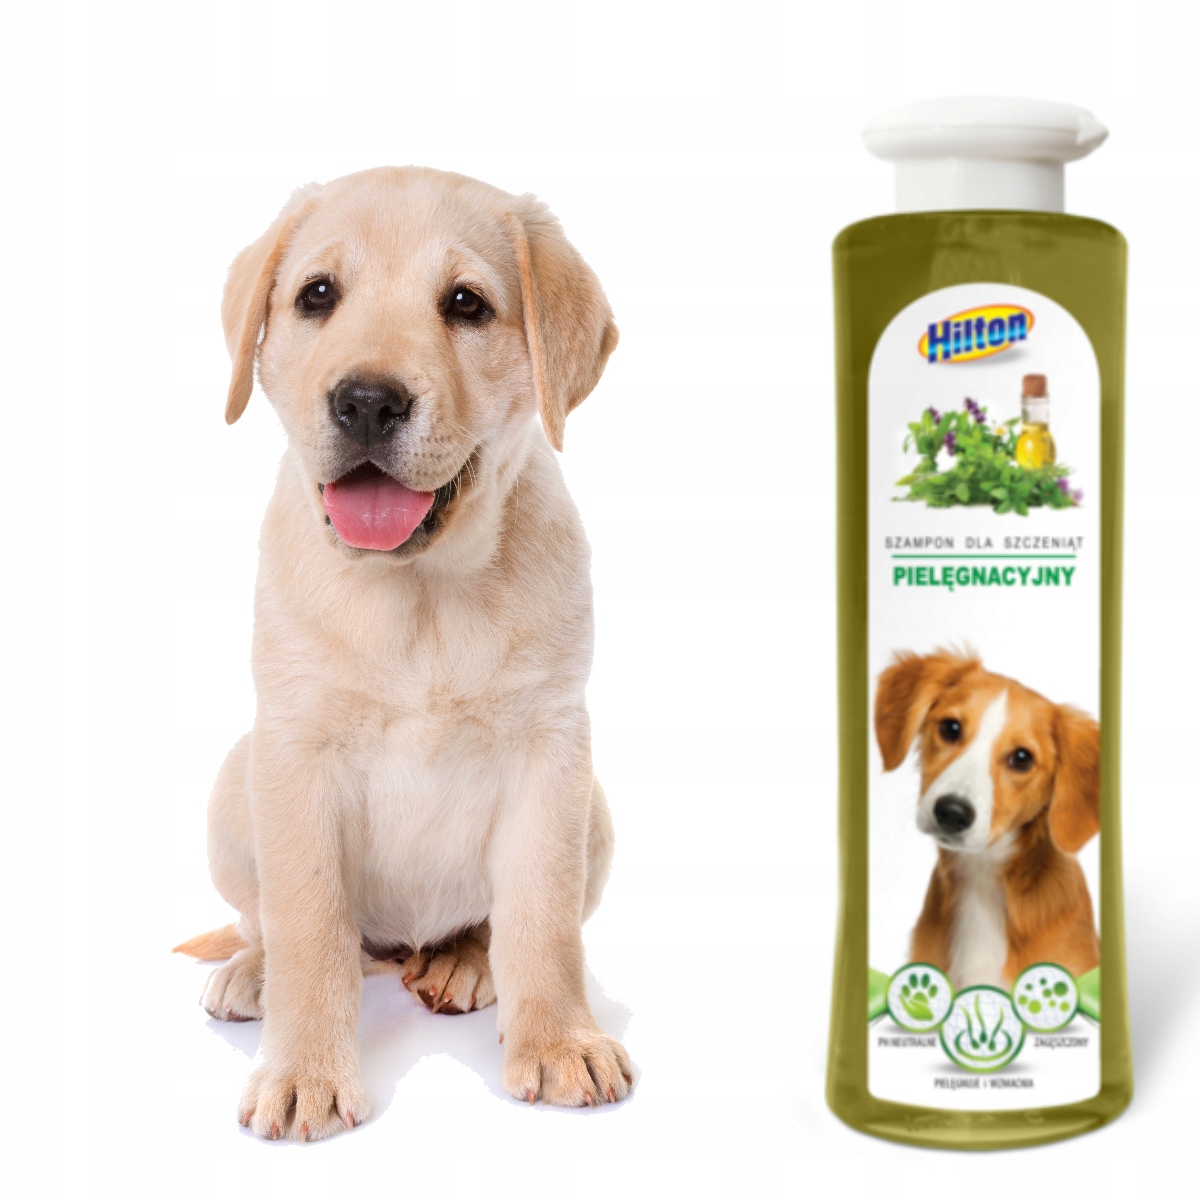 hilton szampon ziołowy dla psa